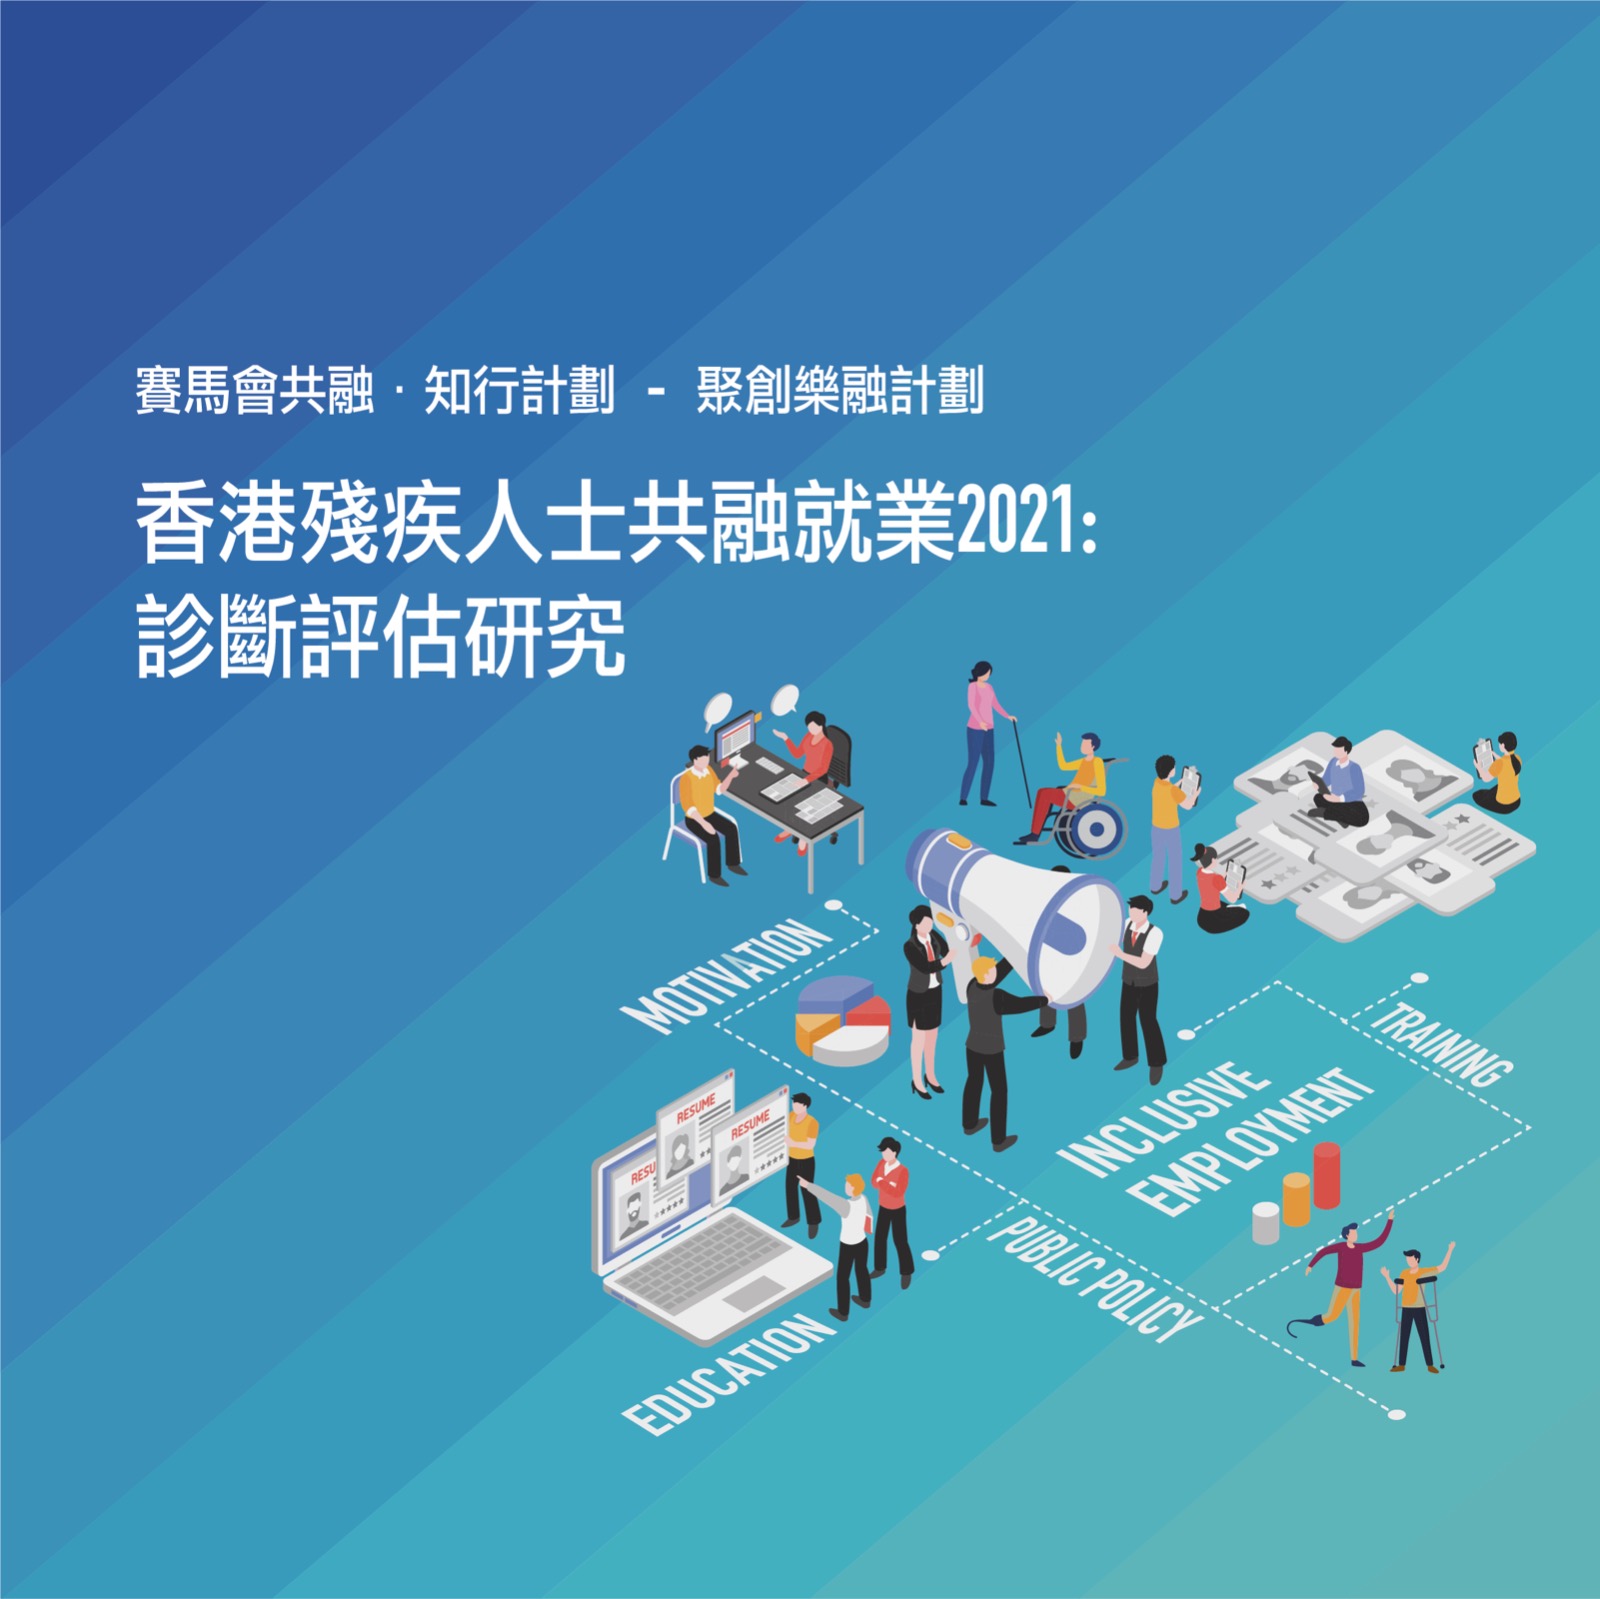 「香港殘疾人士共融就業2021」研究報告